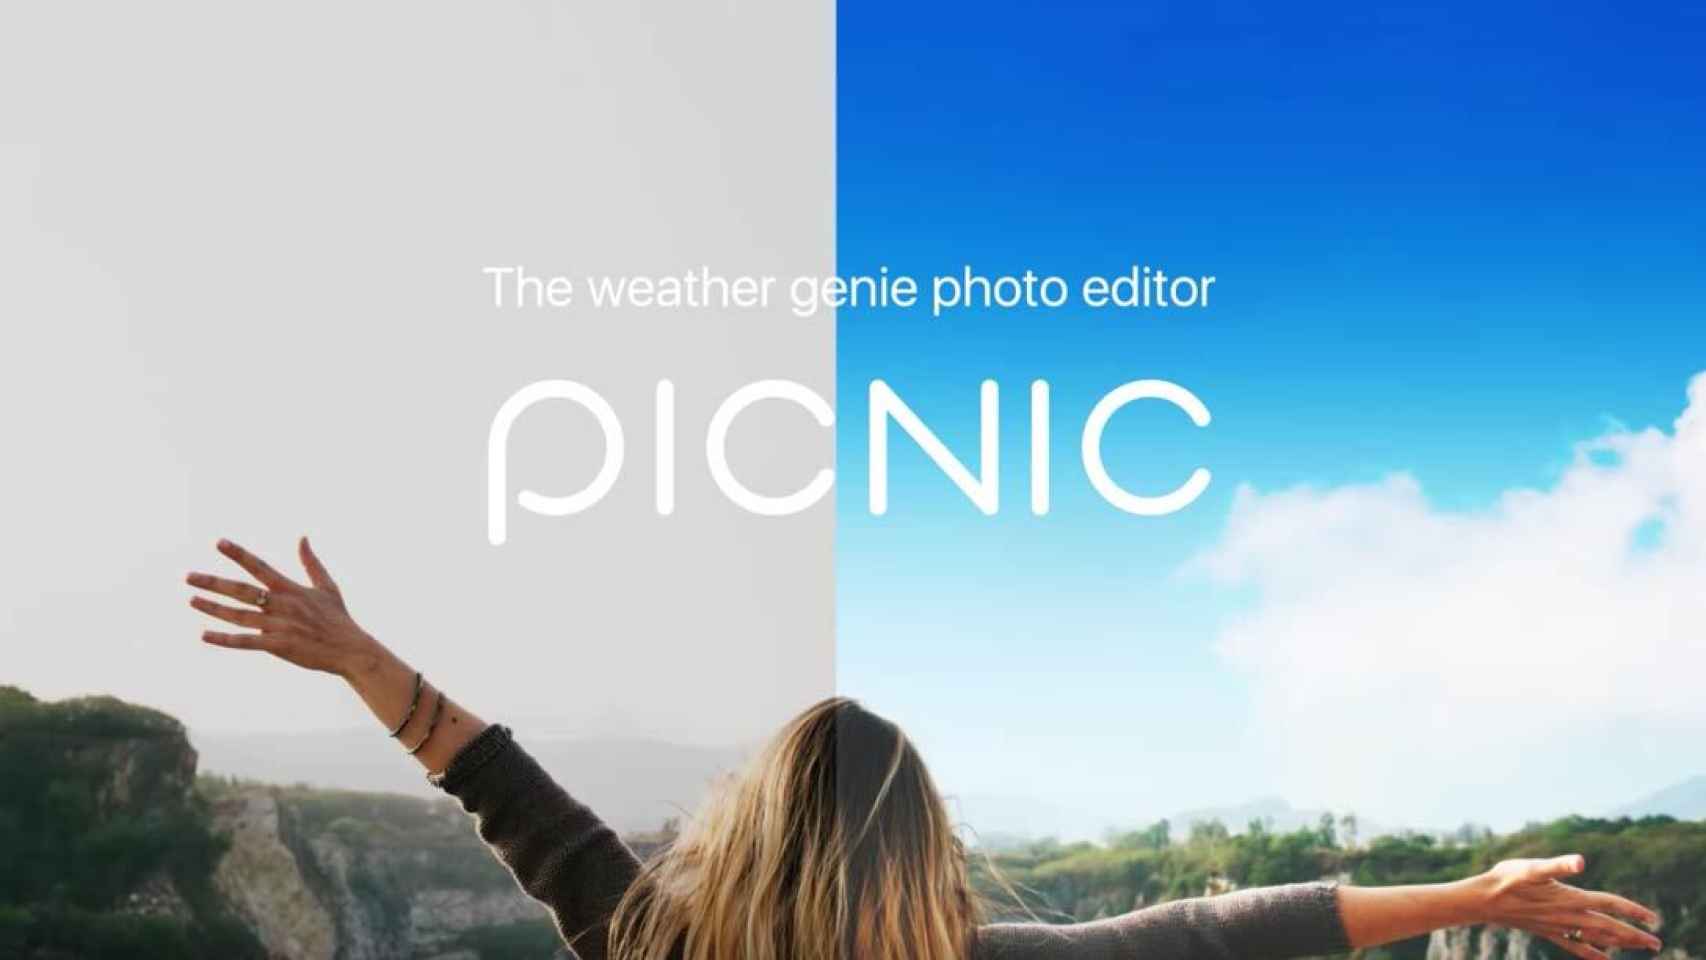 Mejora los cielos de tus fotos y aplica increíbles efectos con Picnic